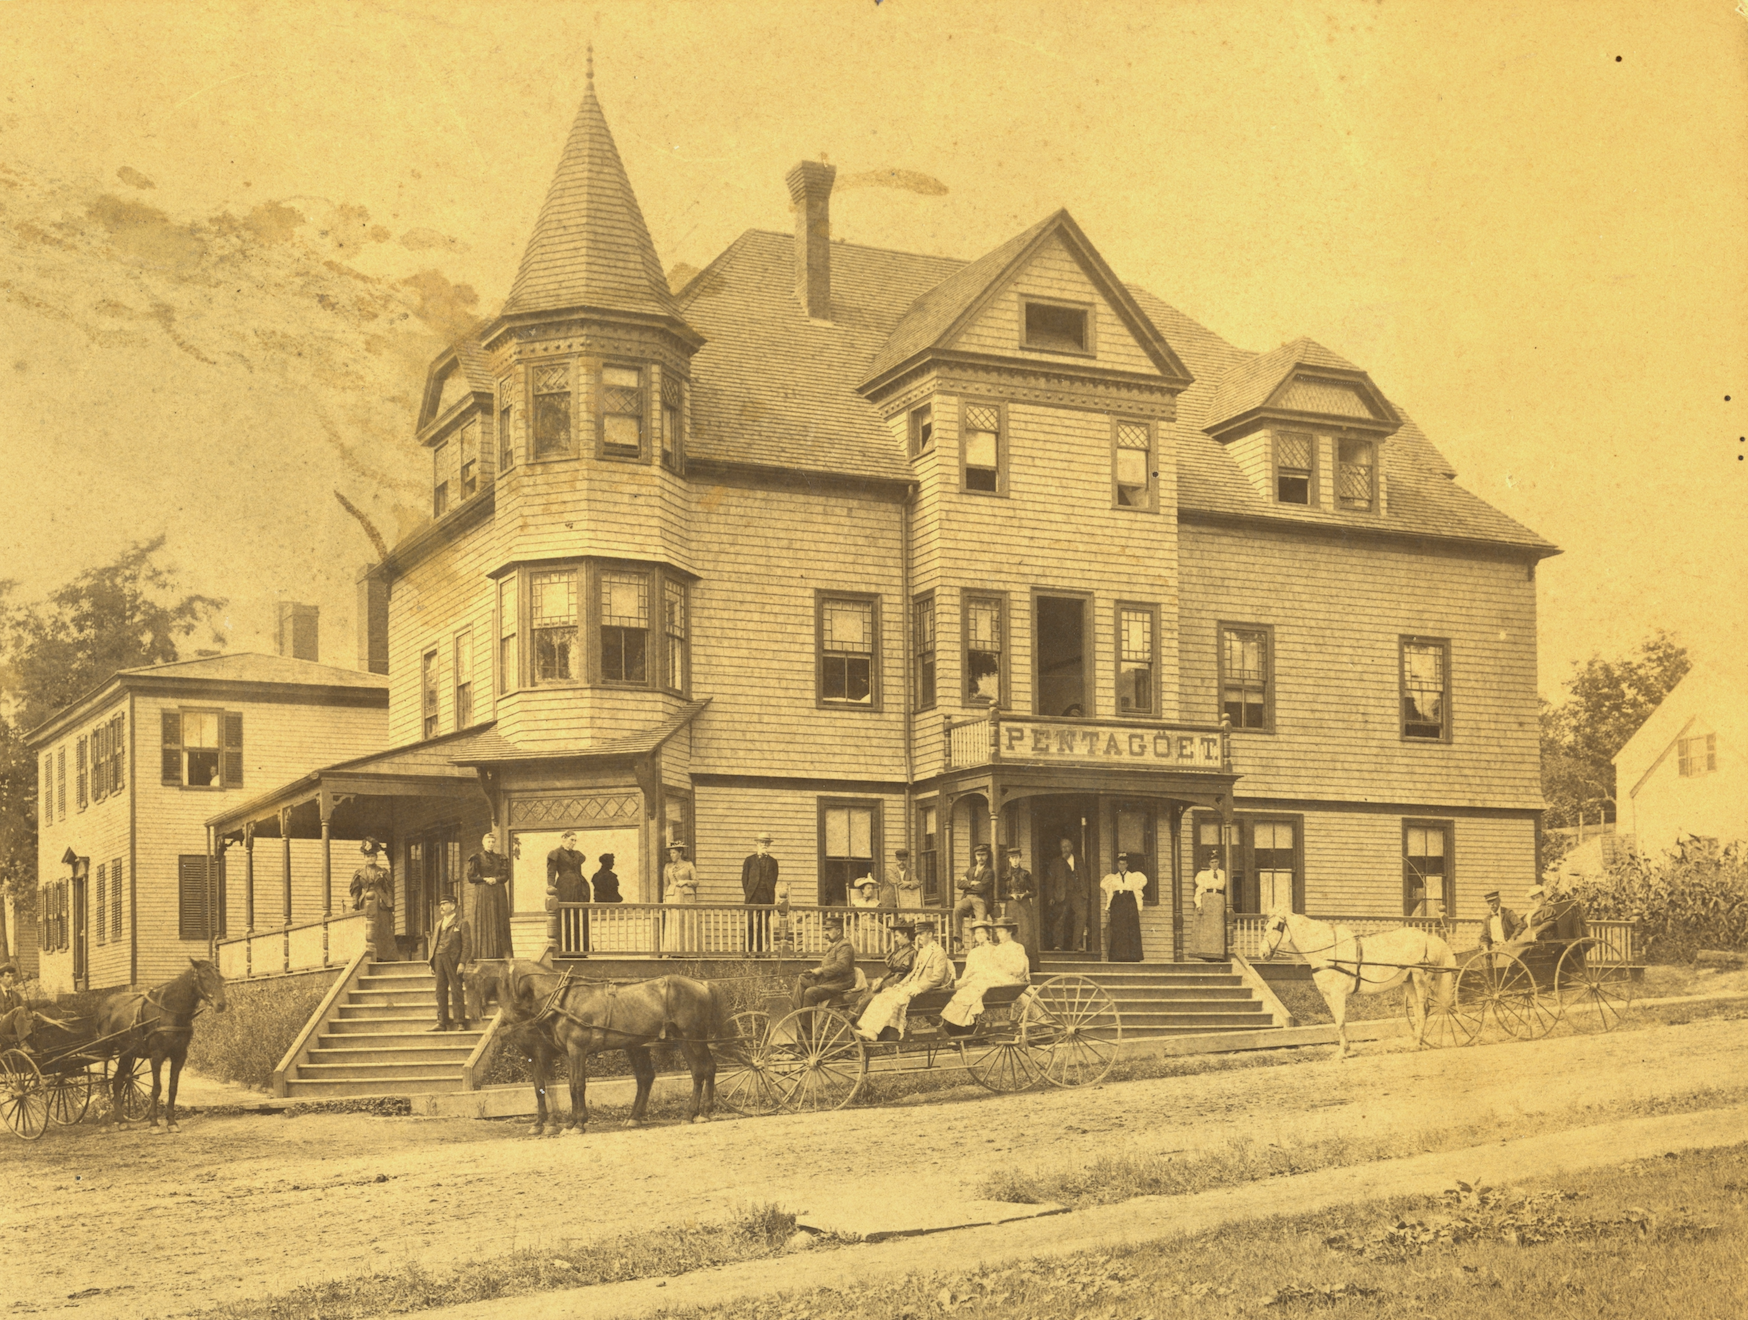 1894 image of the Pentagoet Inn